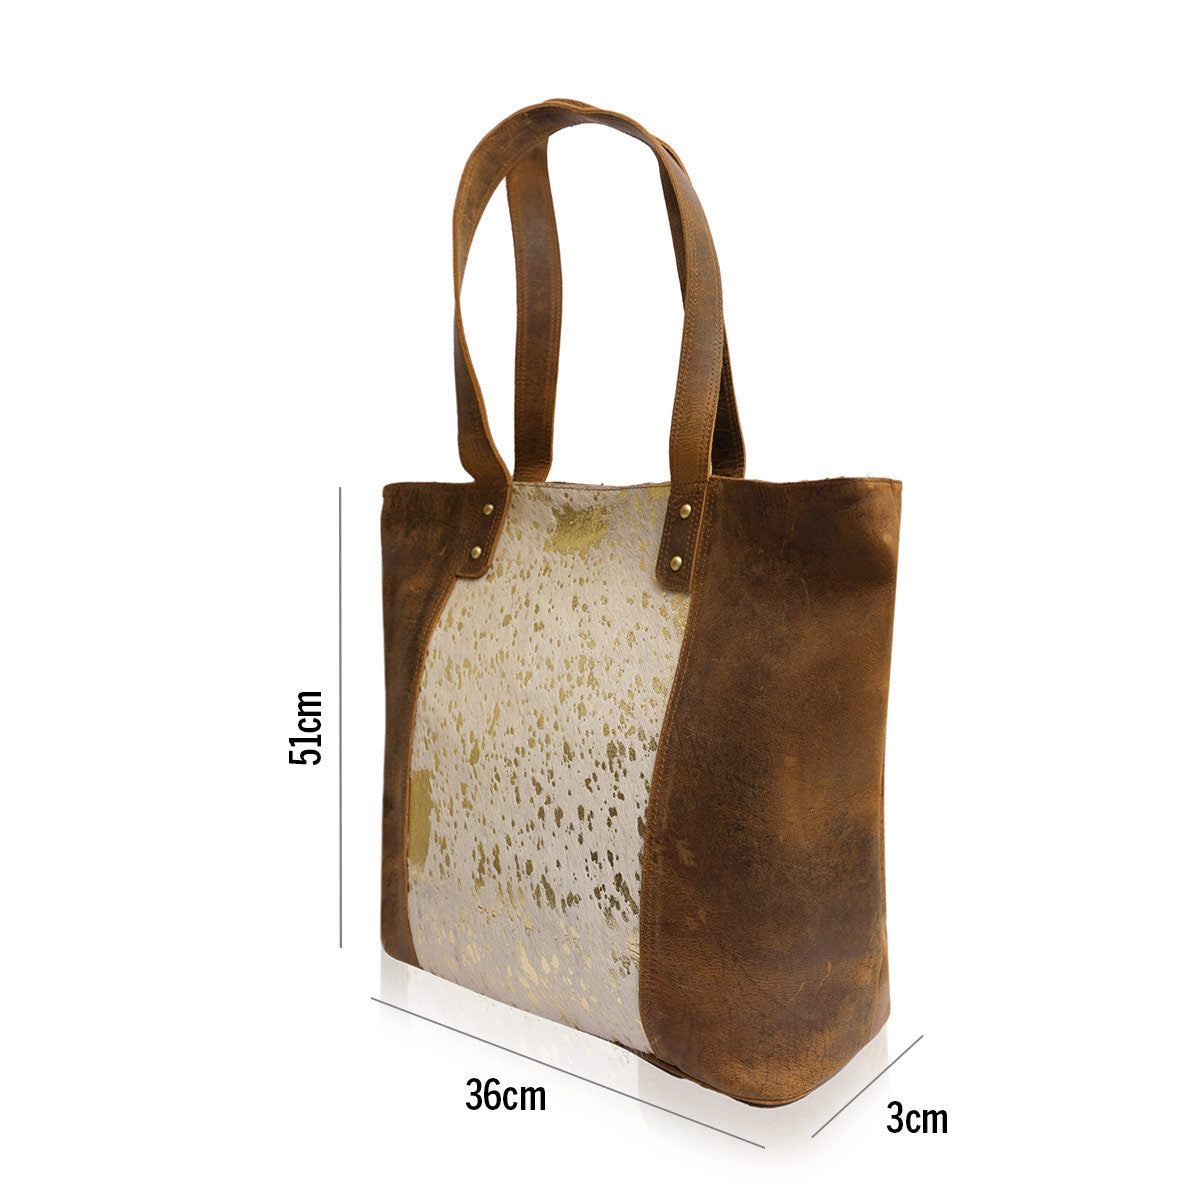 RugCohi- Leather Shoulder Bag